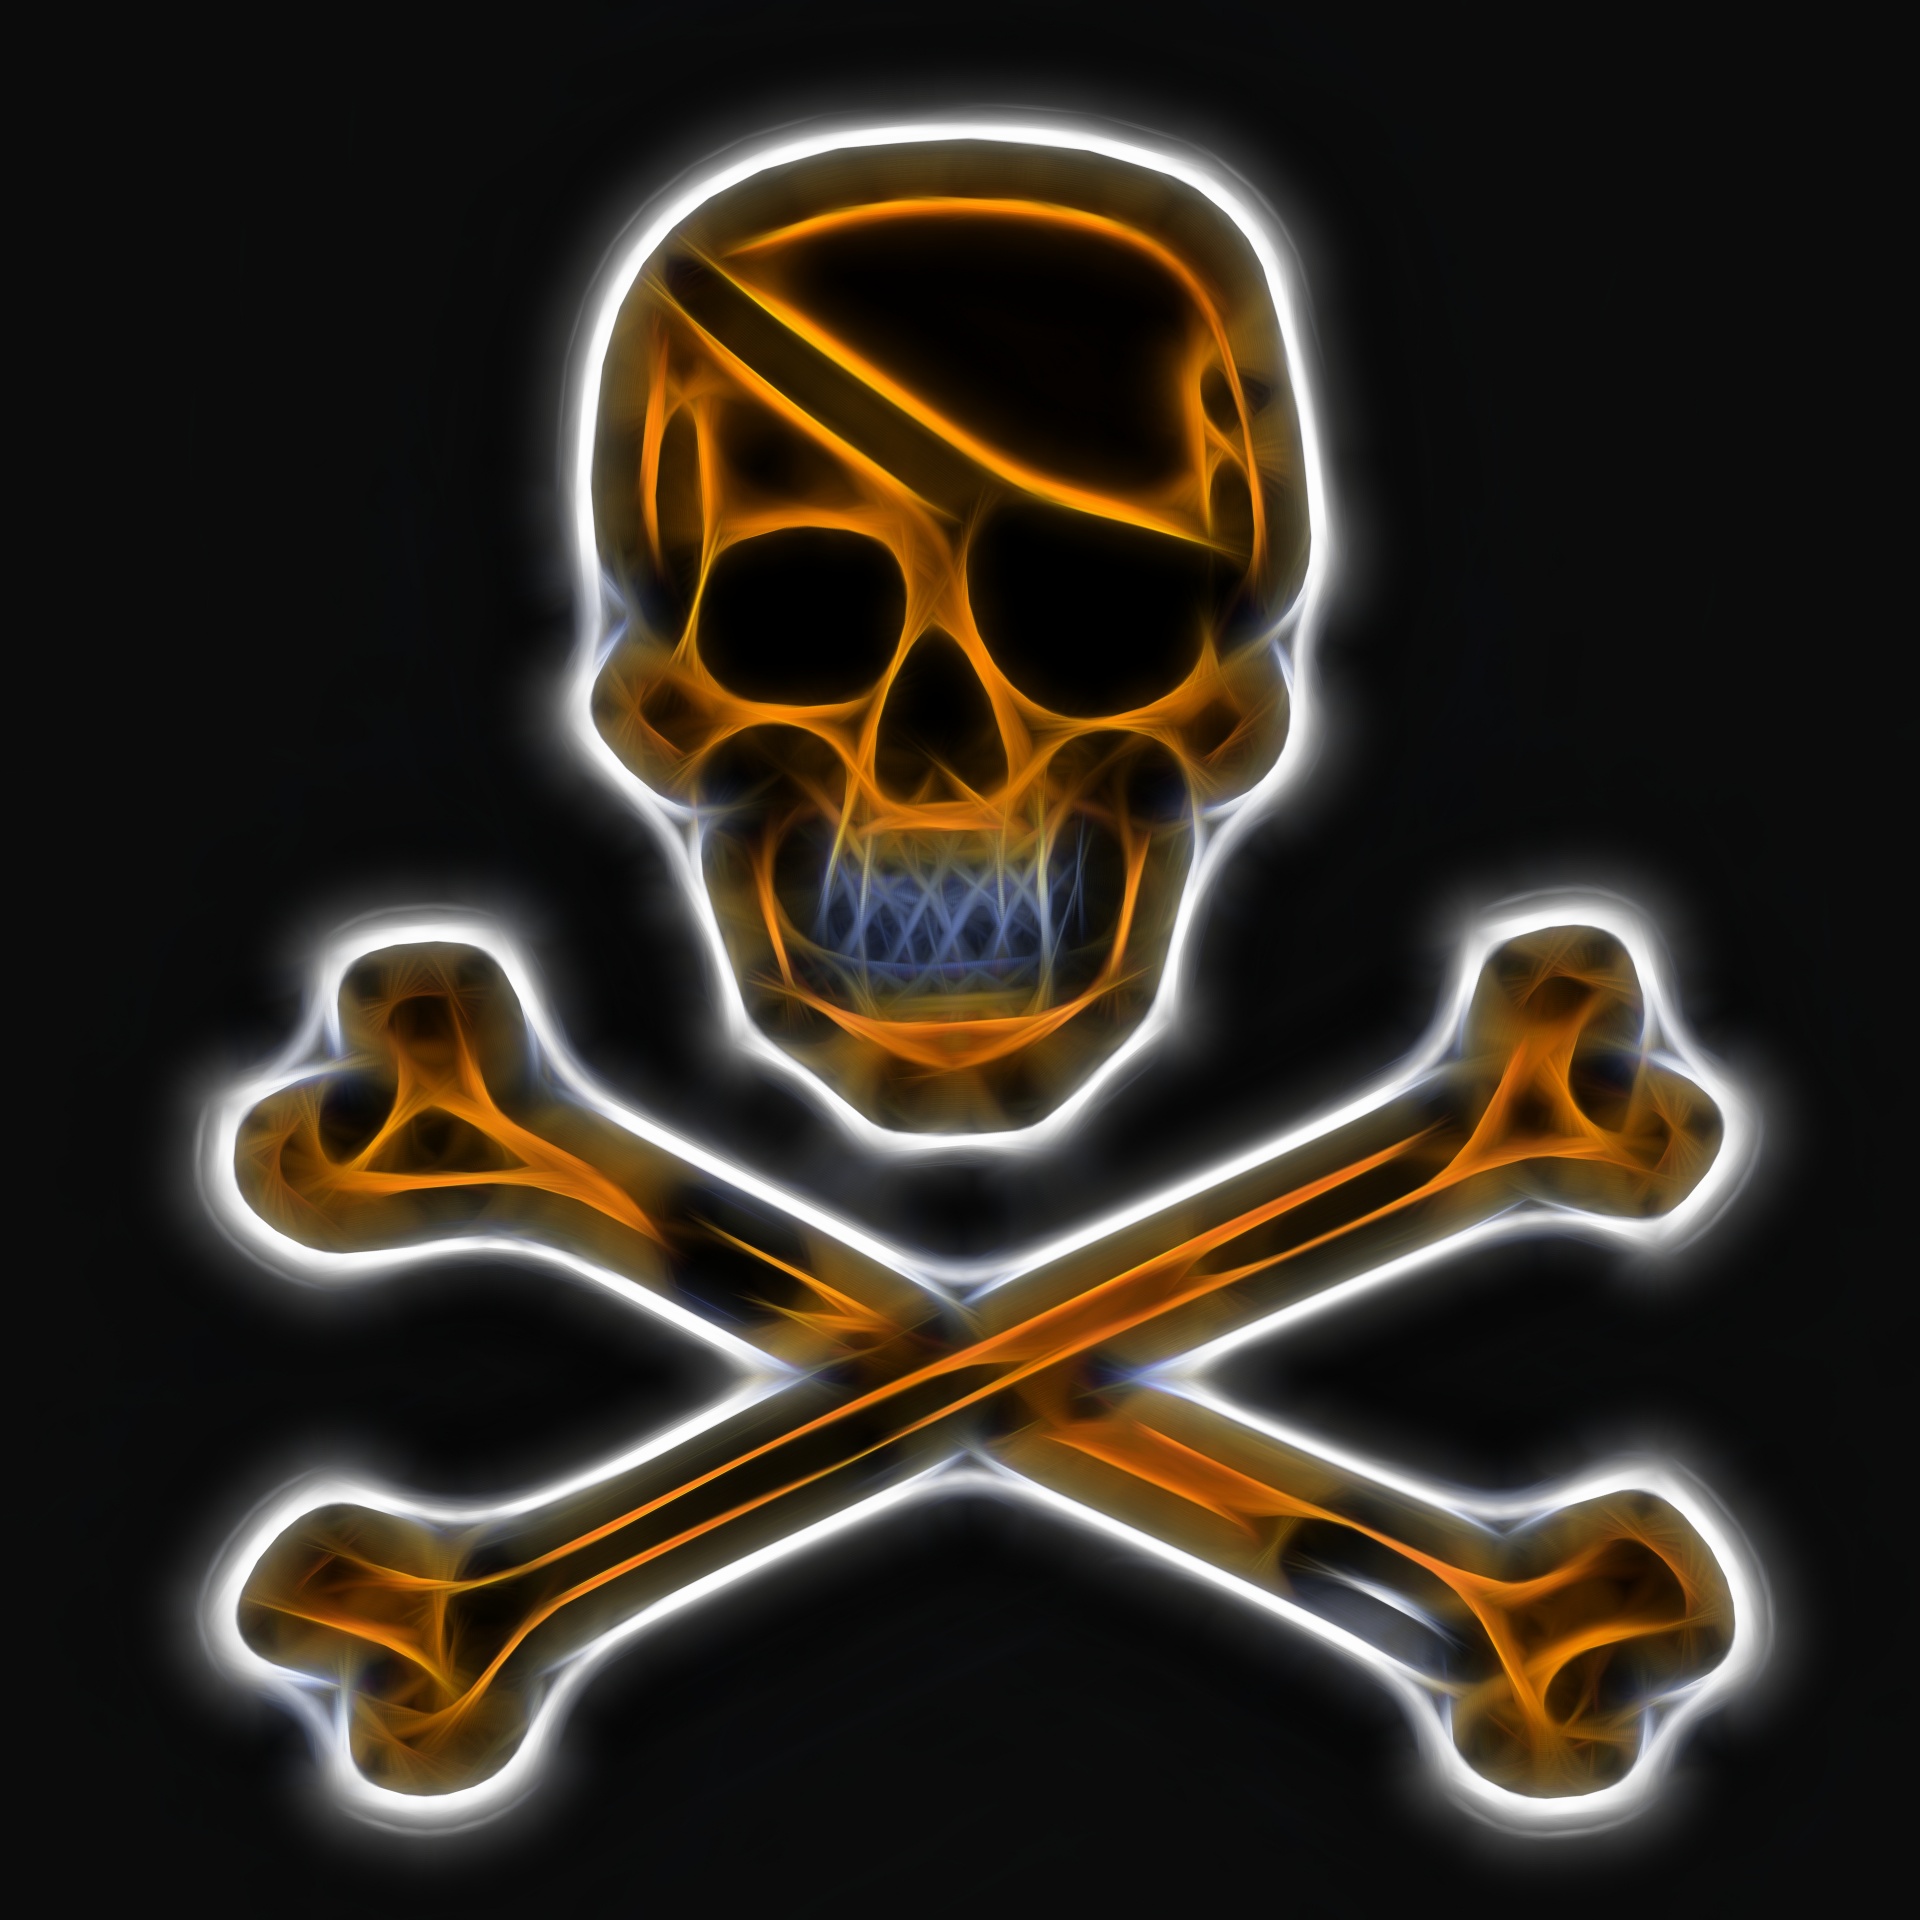 white skull and crossbones on black background